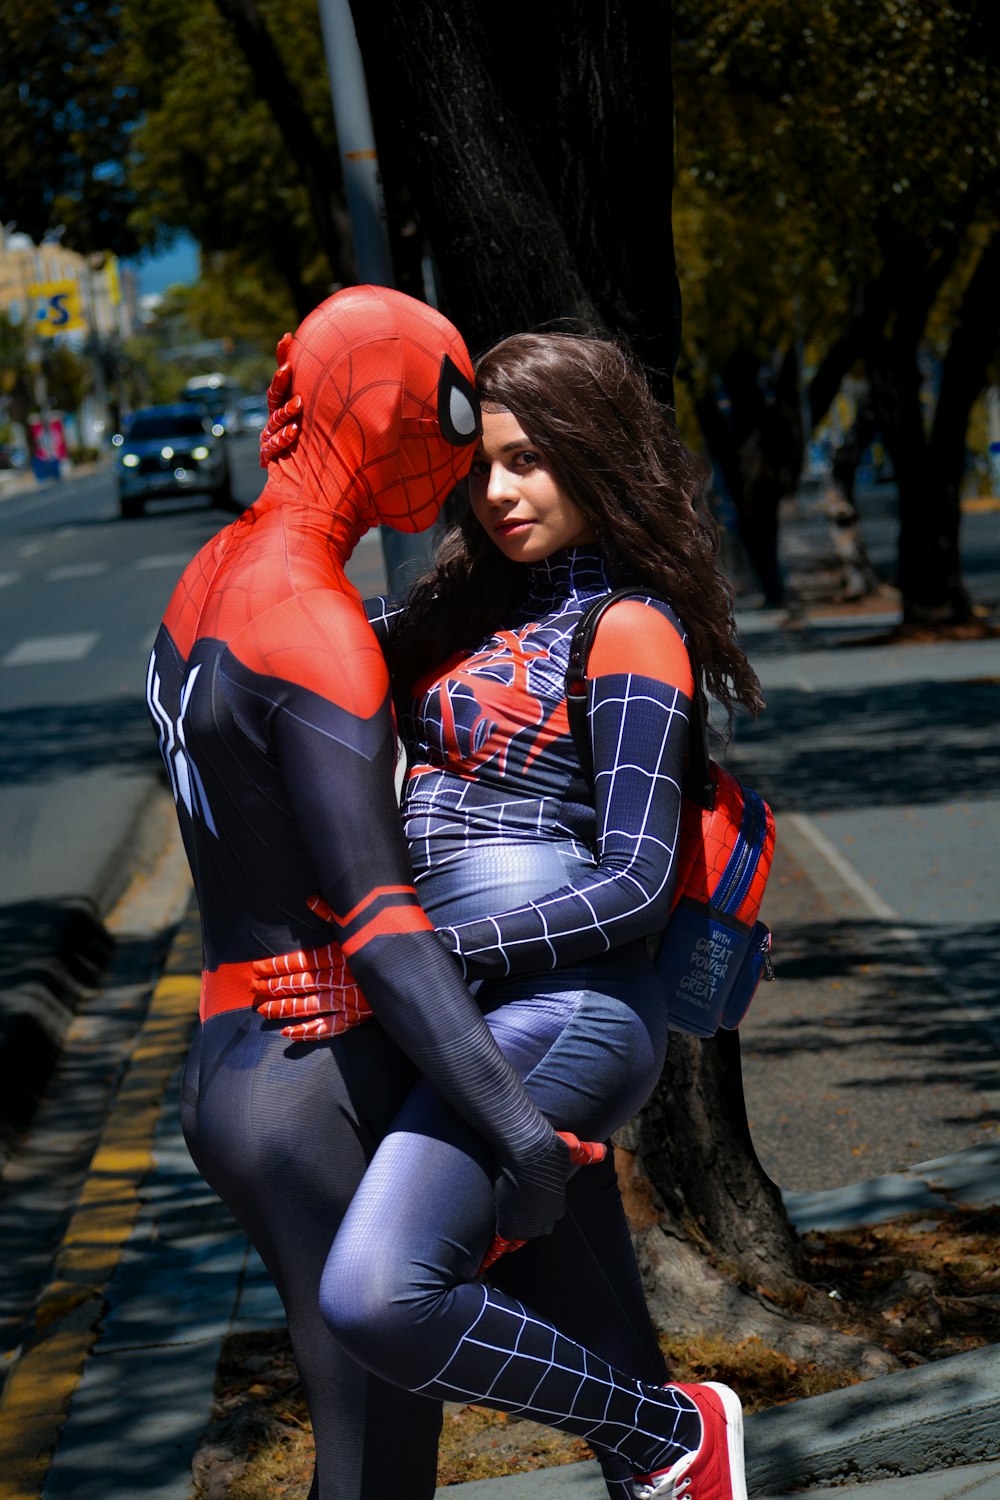 Una donna in un costume di Spiderman che abbraccia un uomo foto – Persona  Immagine gratuita su Unsplash